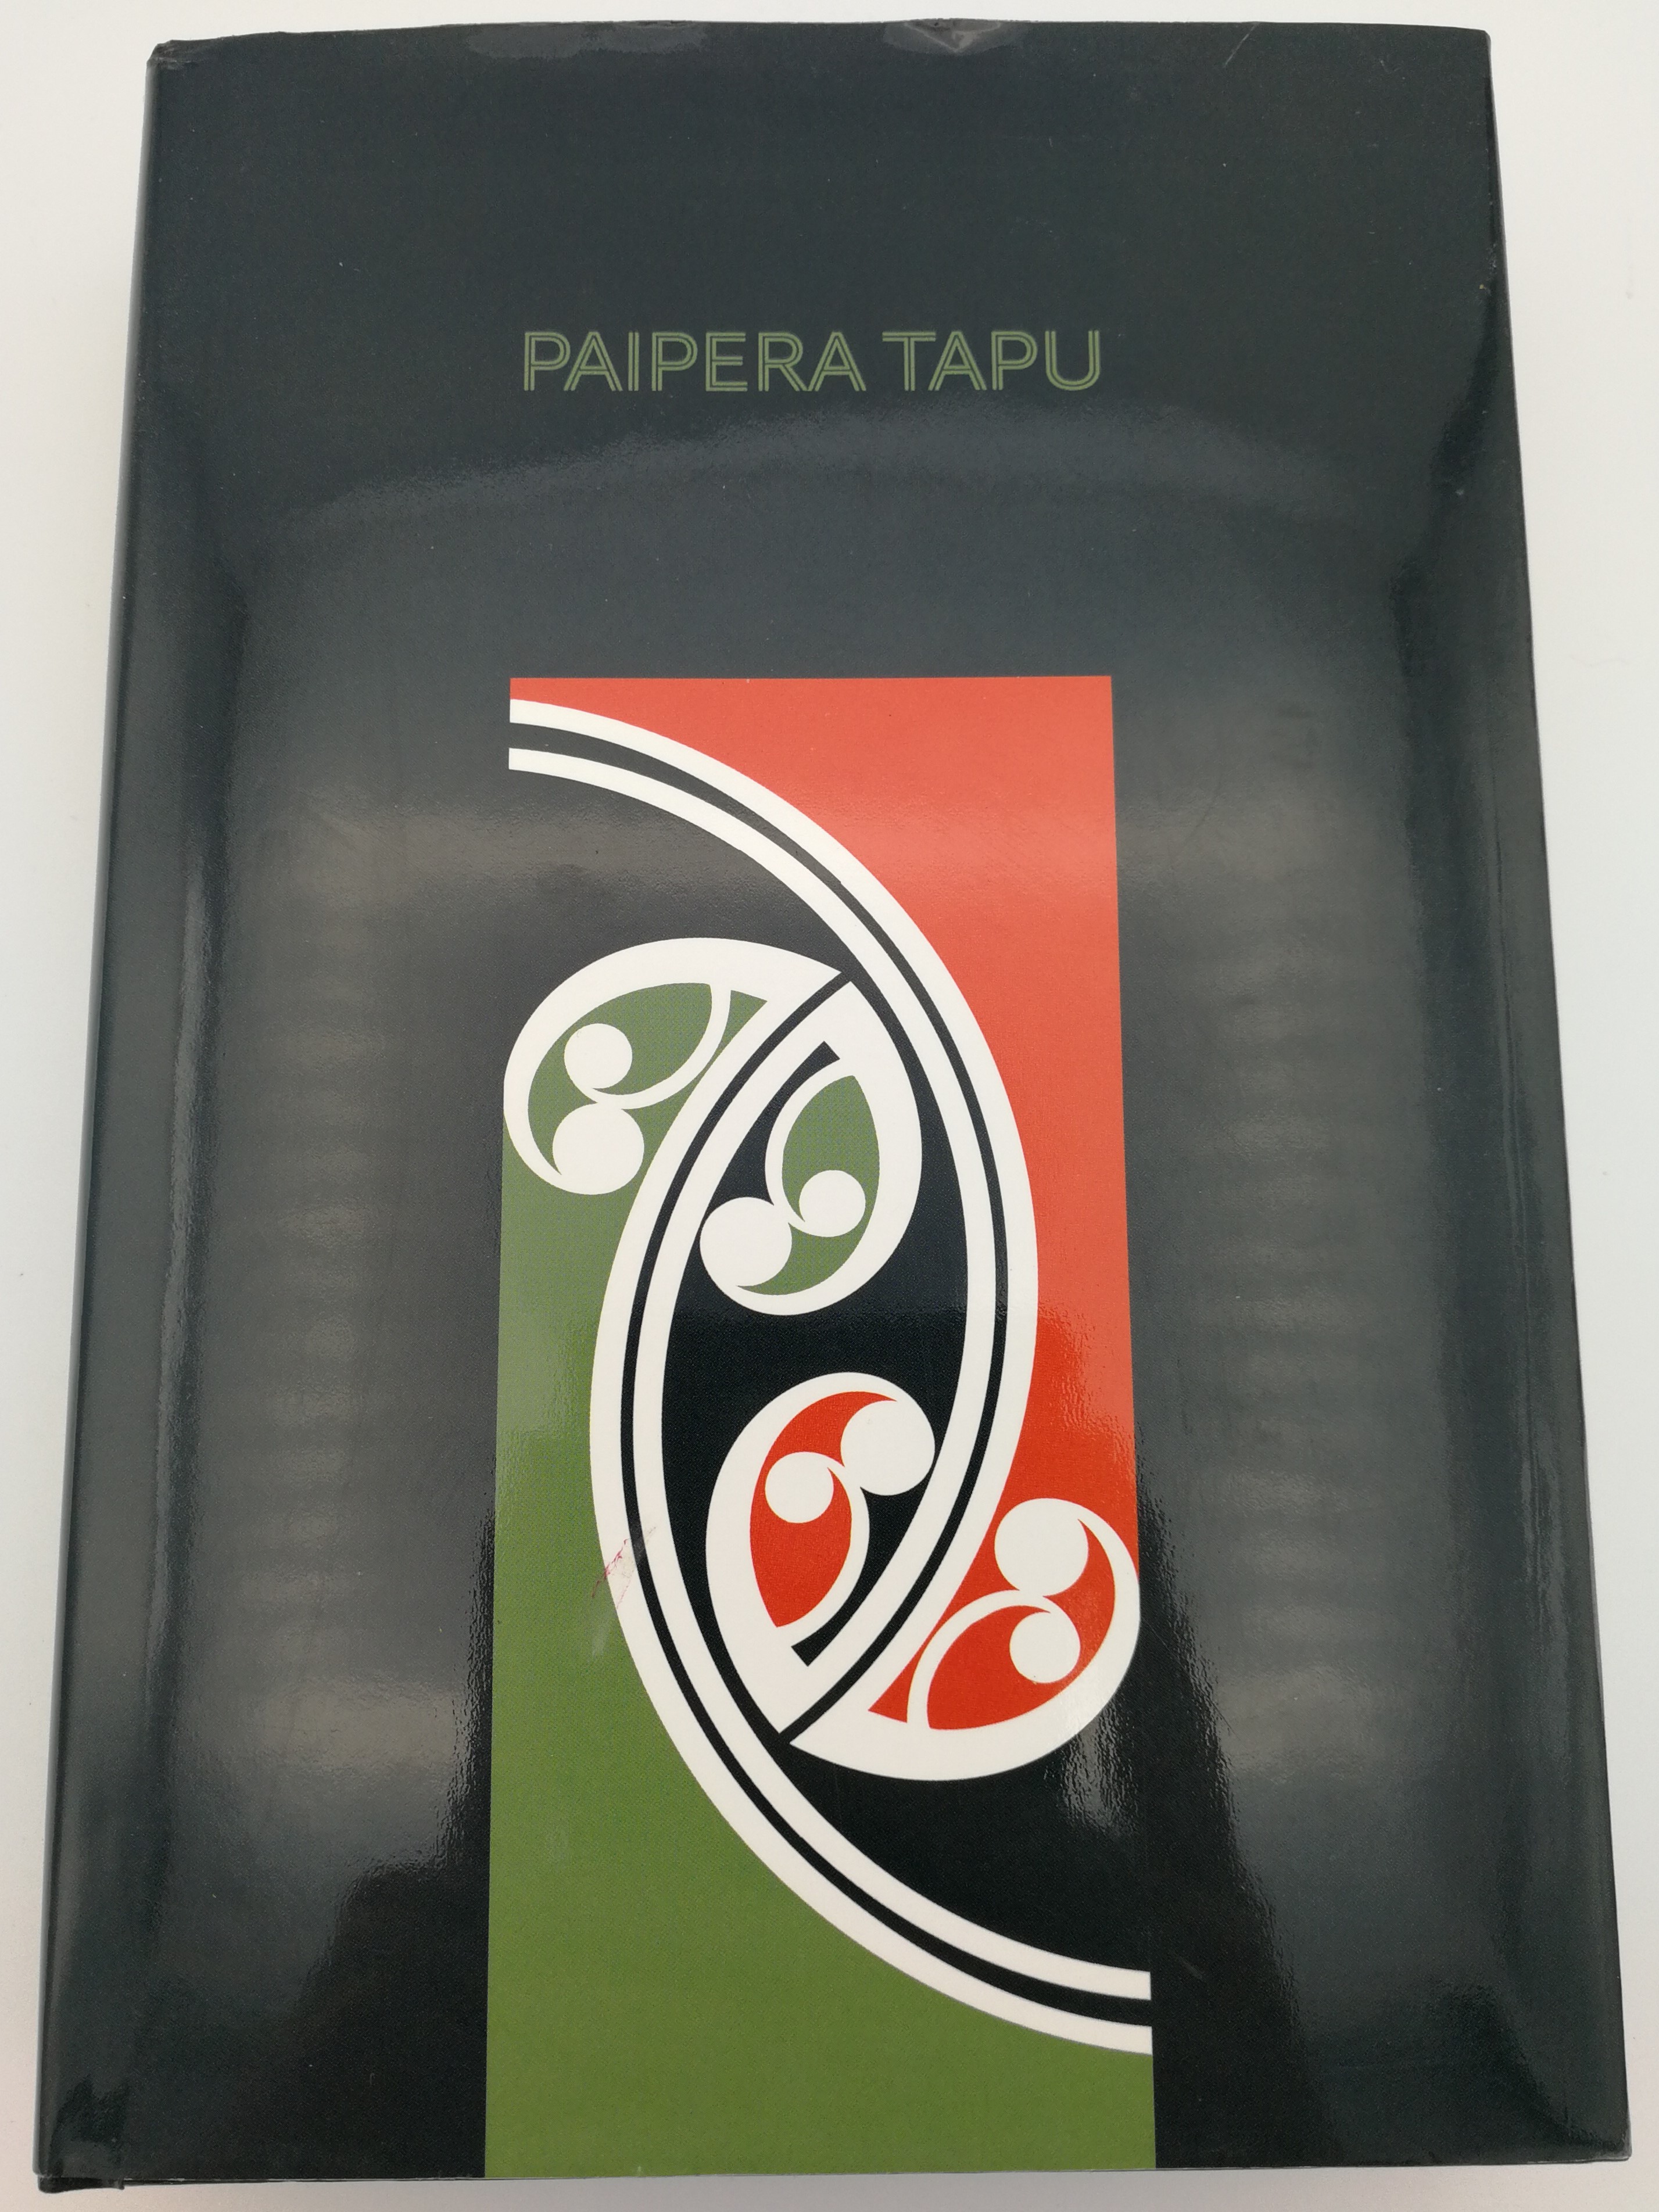 maori-language-holy-bible-paipera-tapu-1.jpg